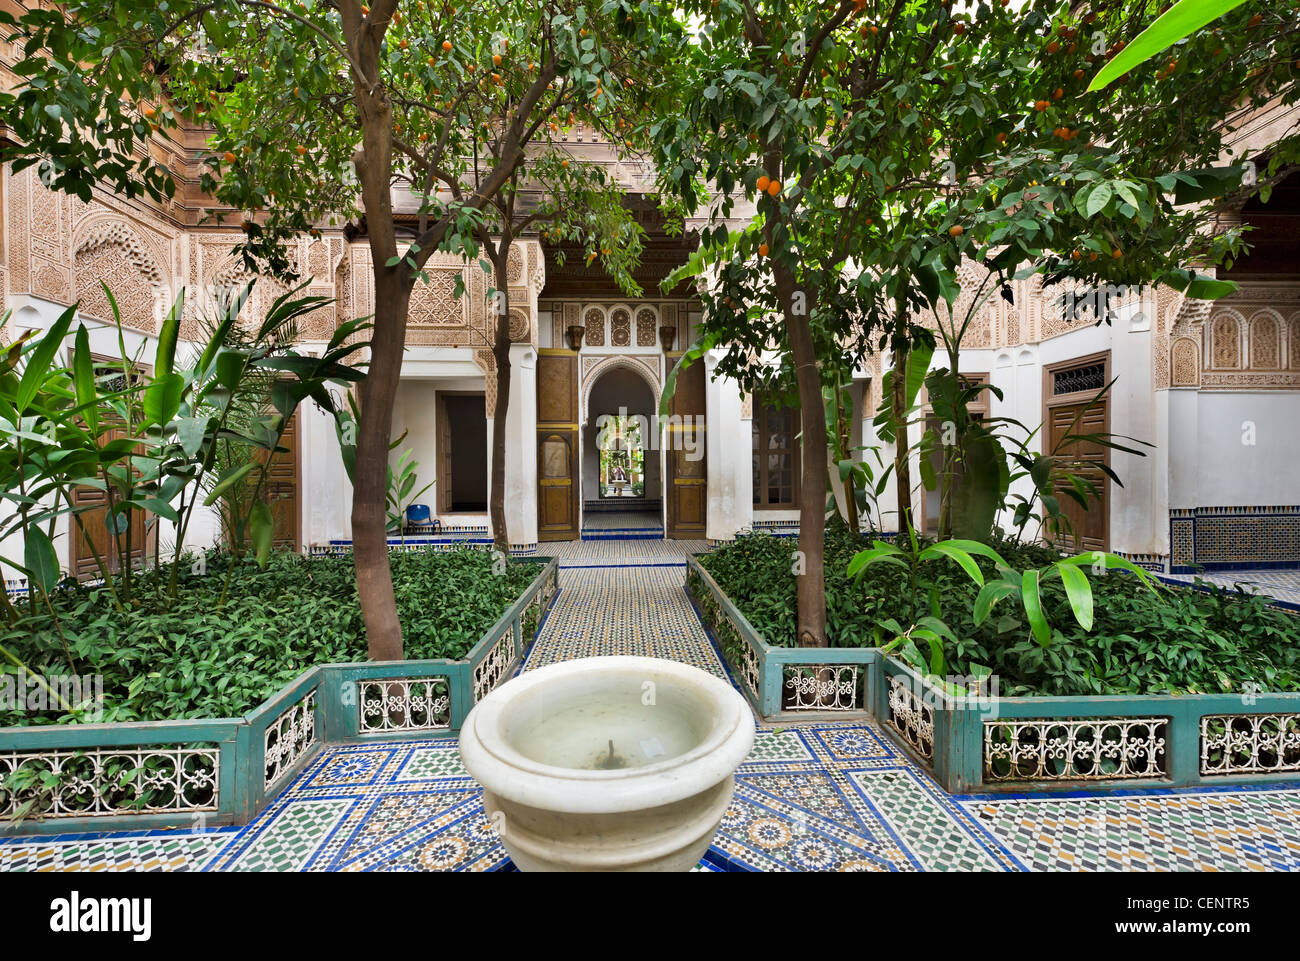 Dans la cour intérieure du palais Bahia, Marrakech, Maroc, Afrique du Nord Banque D'Images